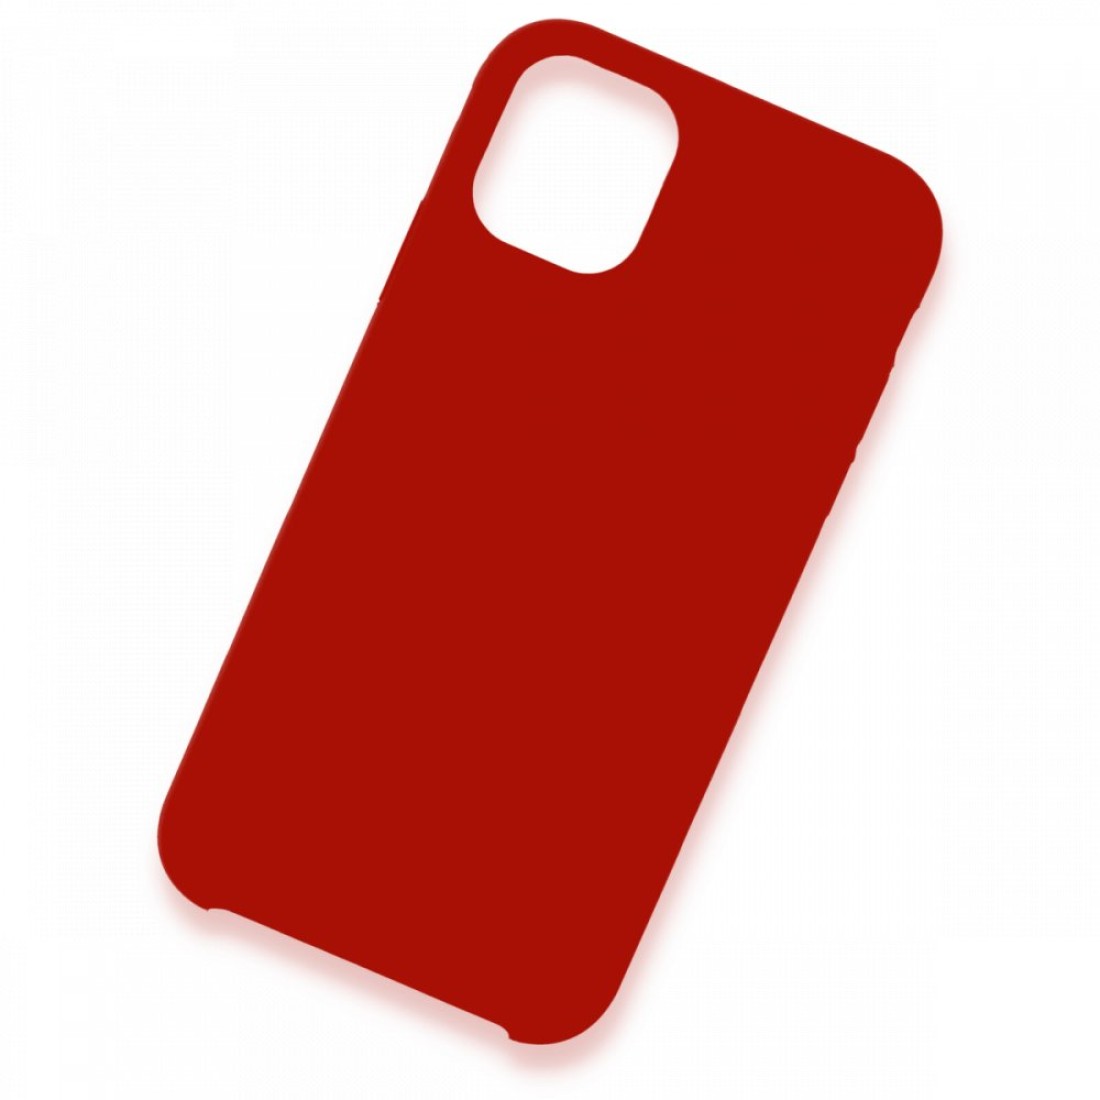 Apple iPhone 11 Pro Max Kılıf Lansman Legant Silikon - Kırmızı